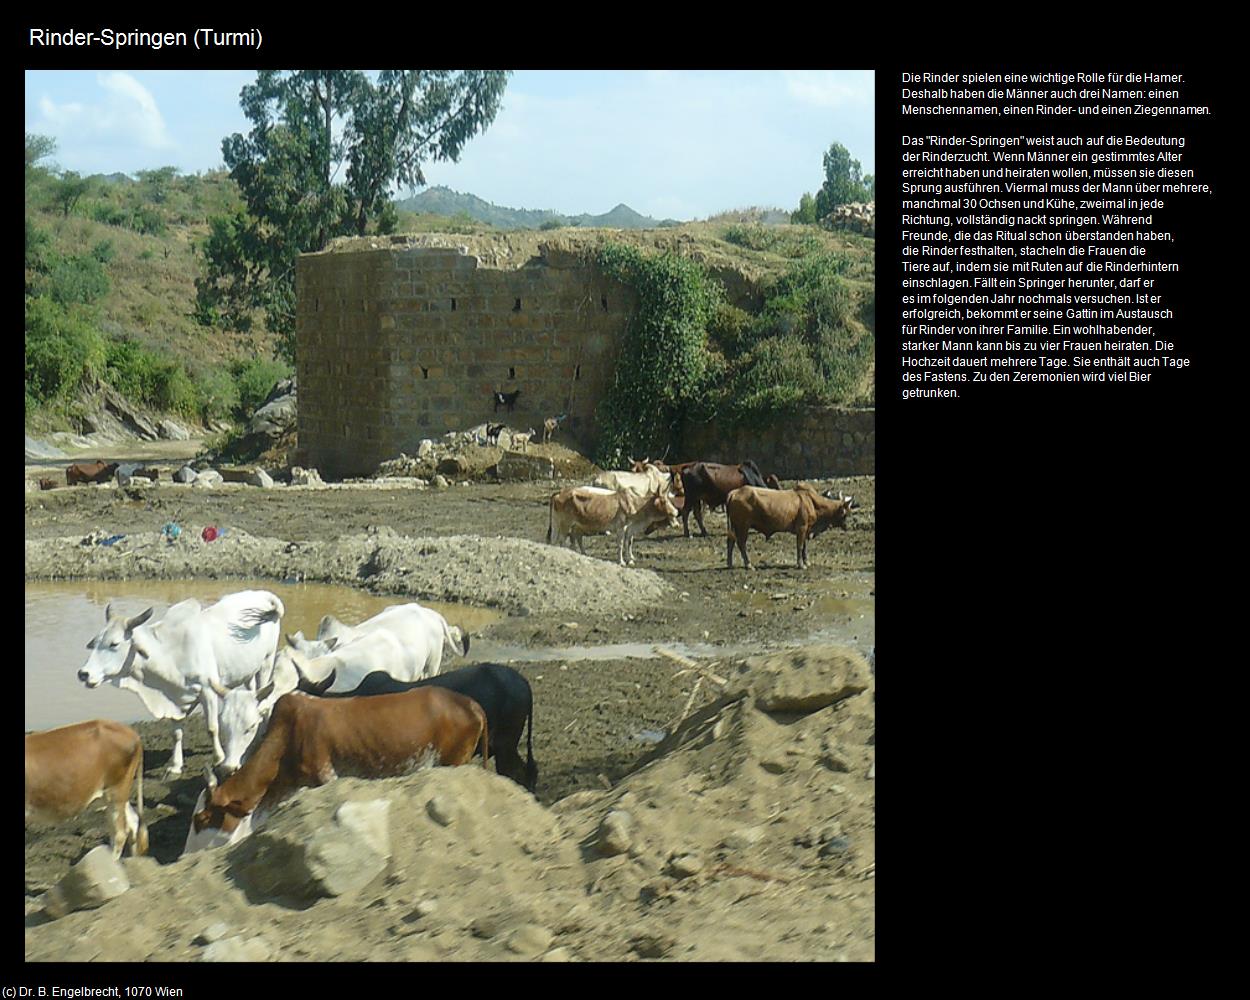 Rinder-Springen  (Turmi) in Äthiopien